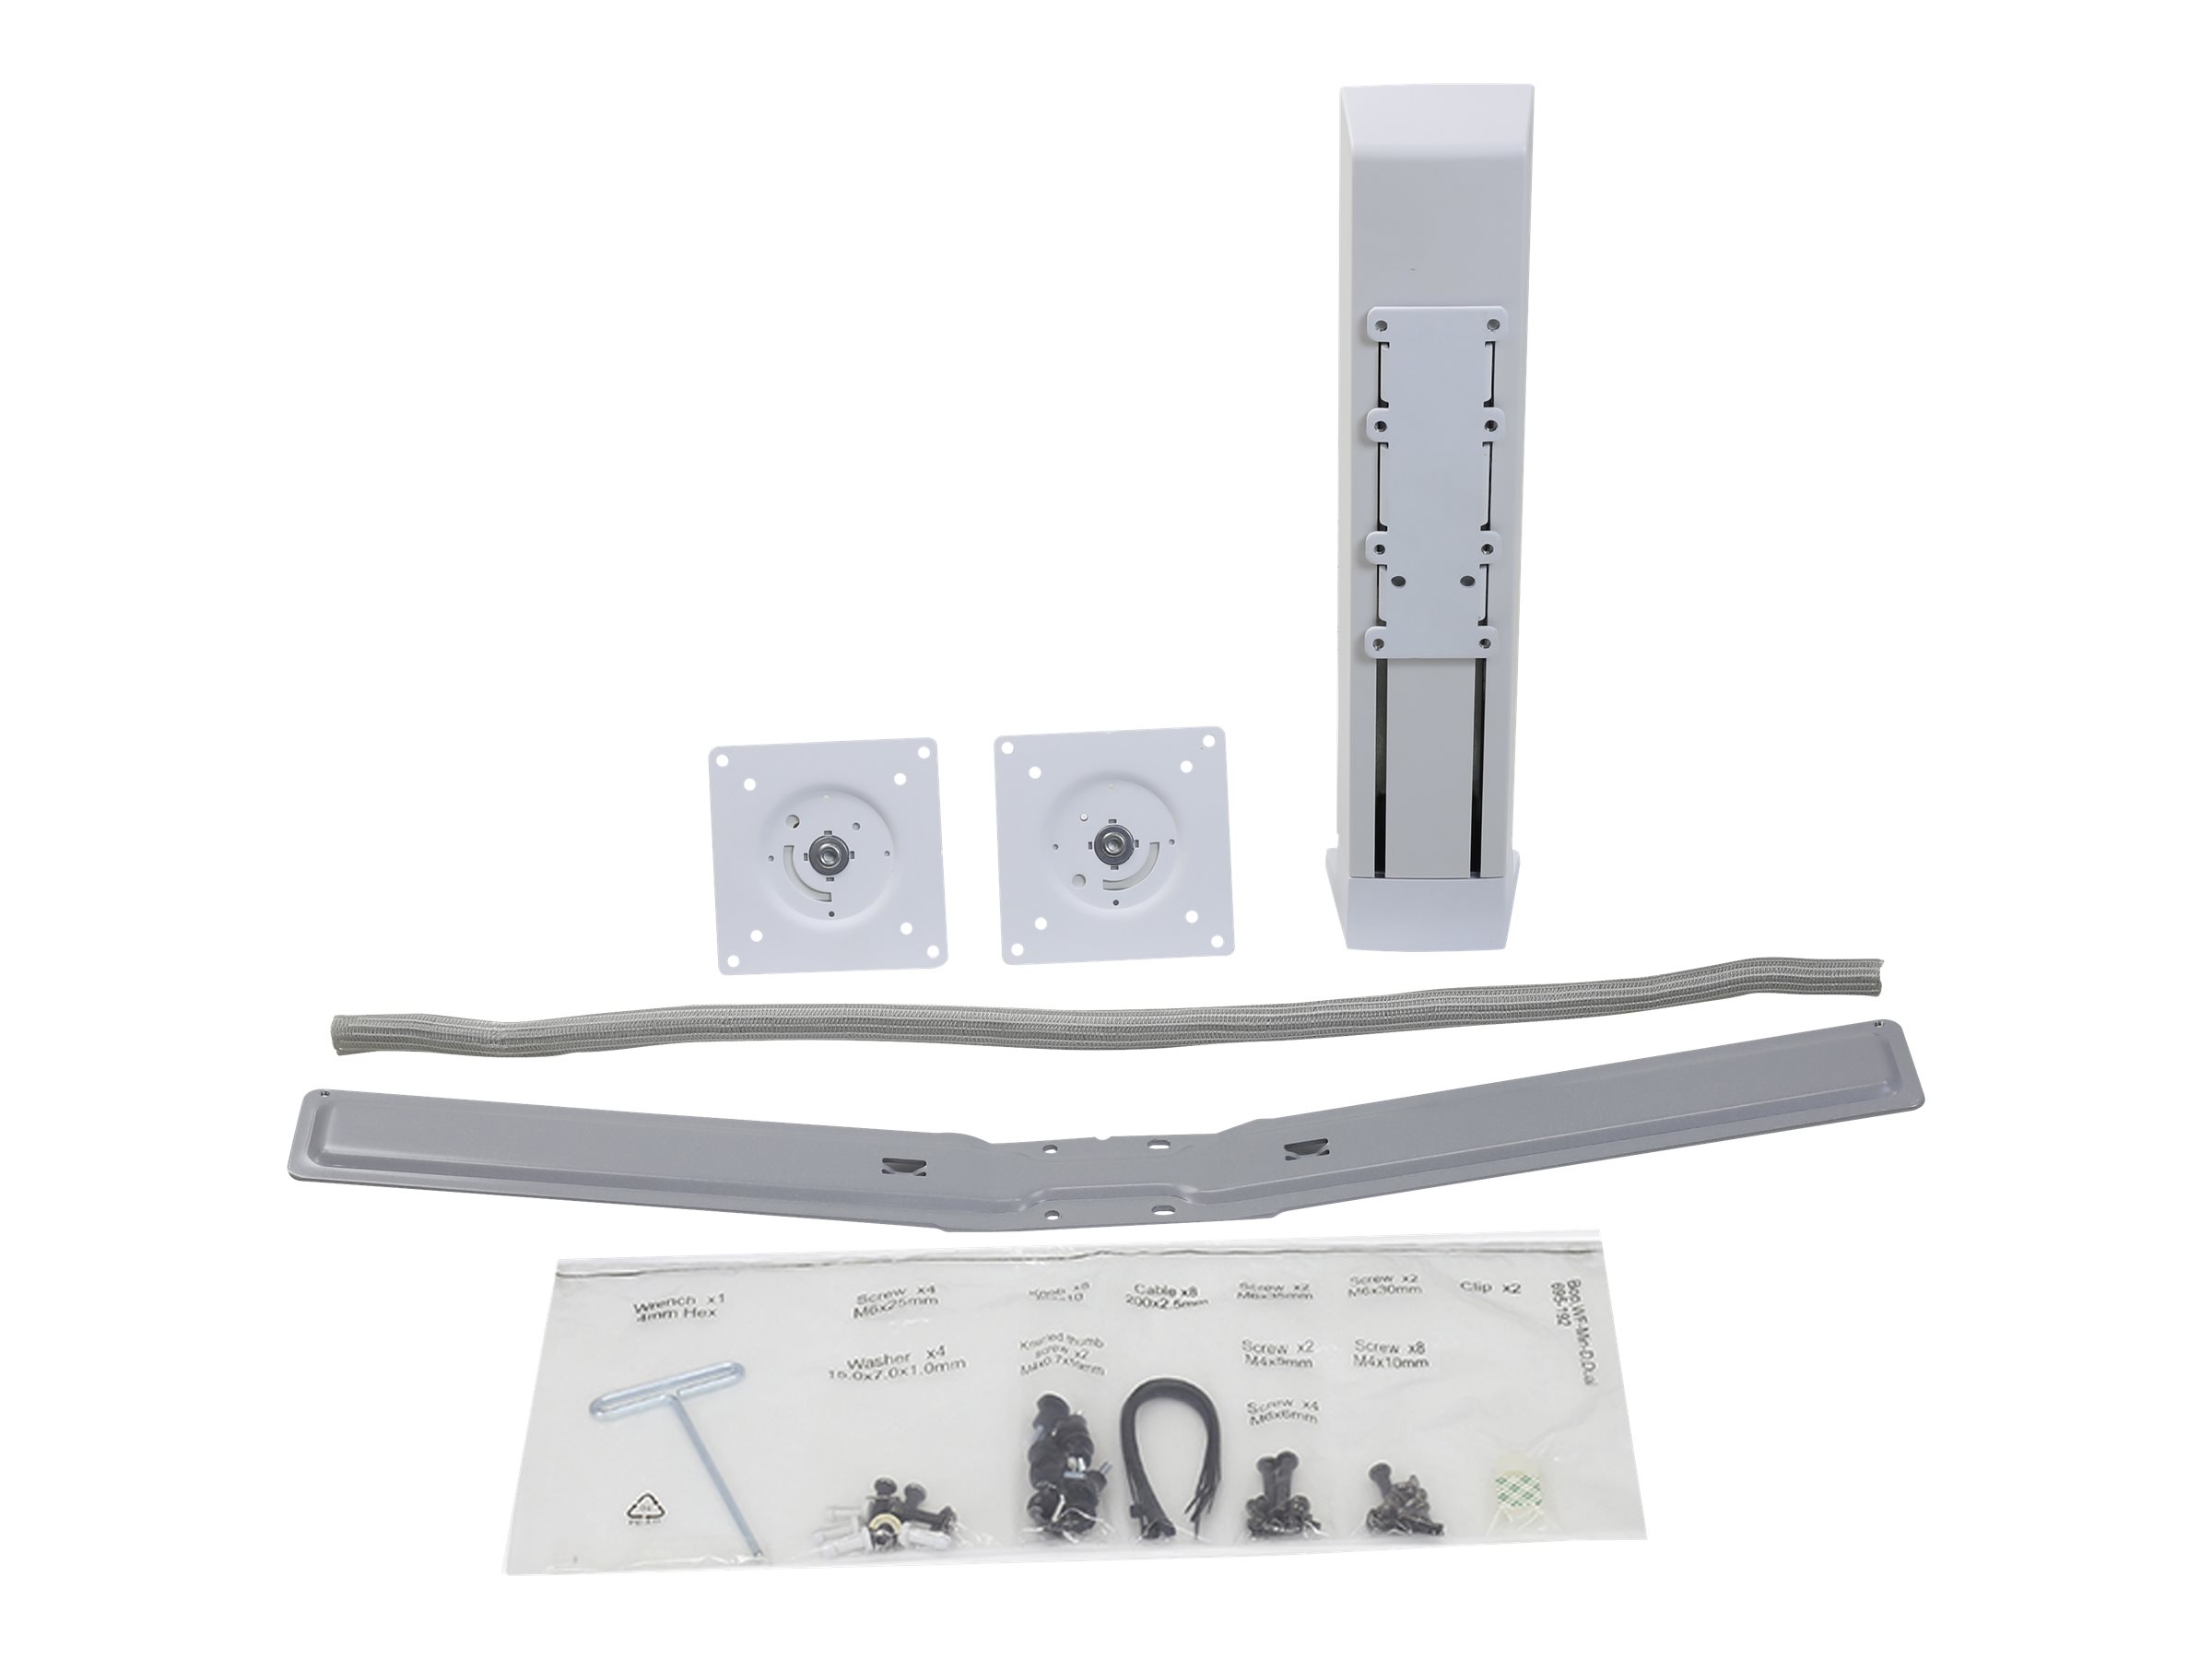 Ergotron WorkFit Dual Monitor Kit - Befestigungskit für 2 Monitore - weiß - Bildschirmgröße: 61 cm (24")